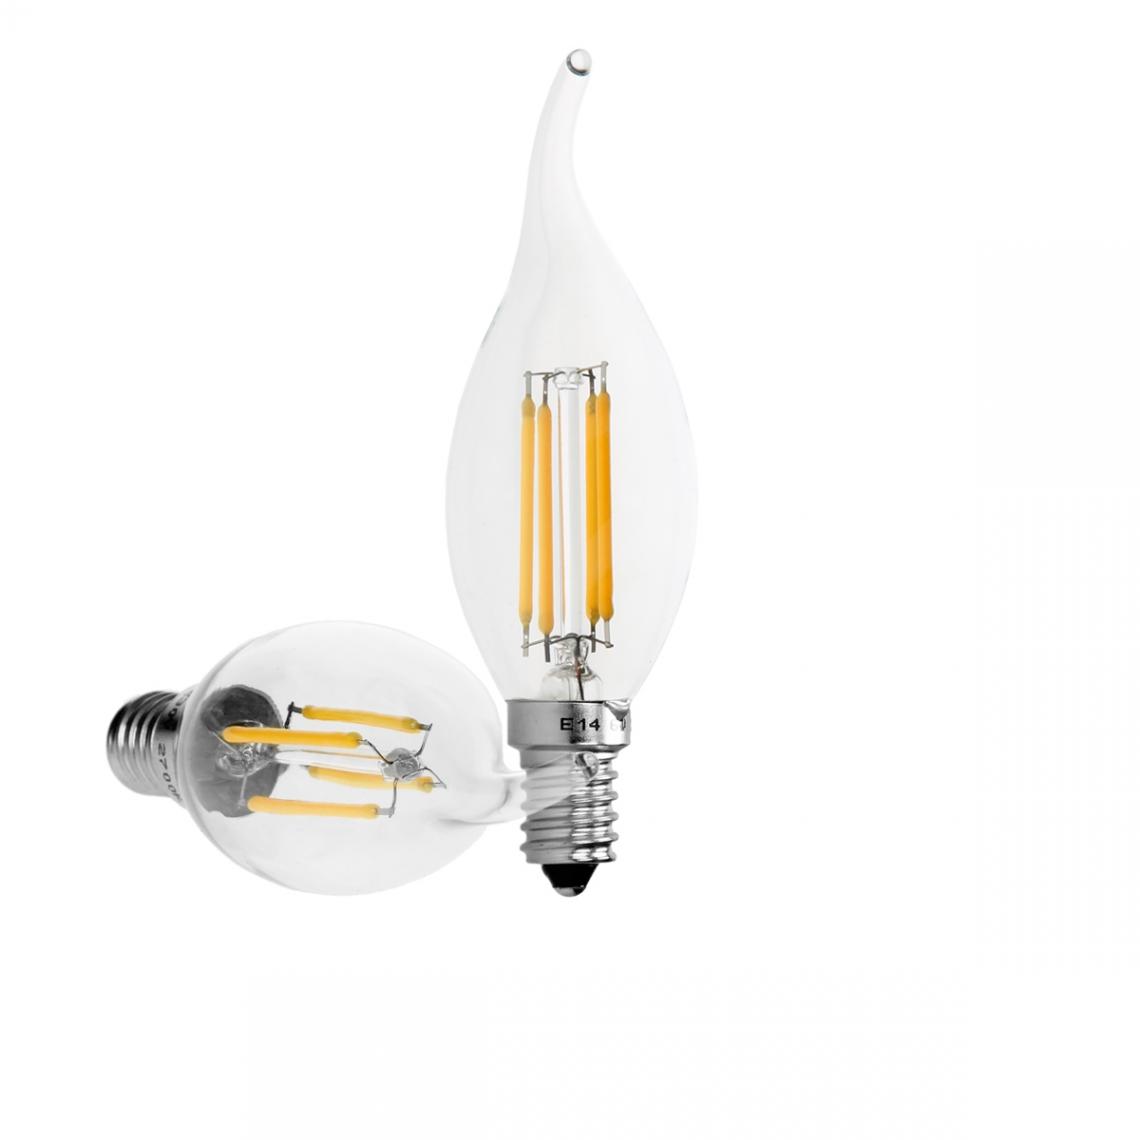 Ecd Germany - 2 x Lampe LED rafale de vent filament de bougie E14 4W blanc chaud - Ampoules LED